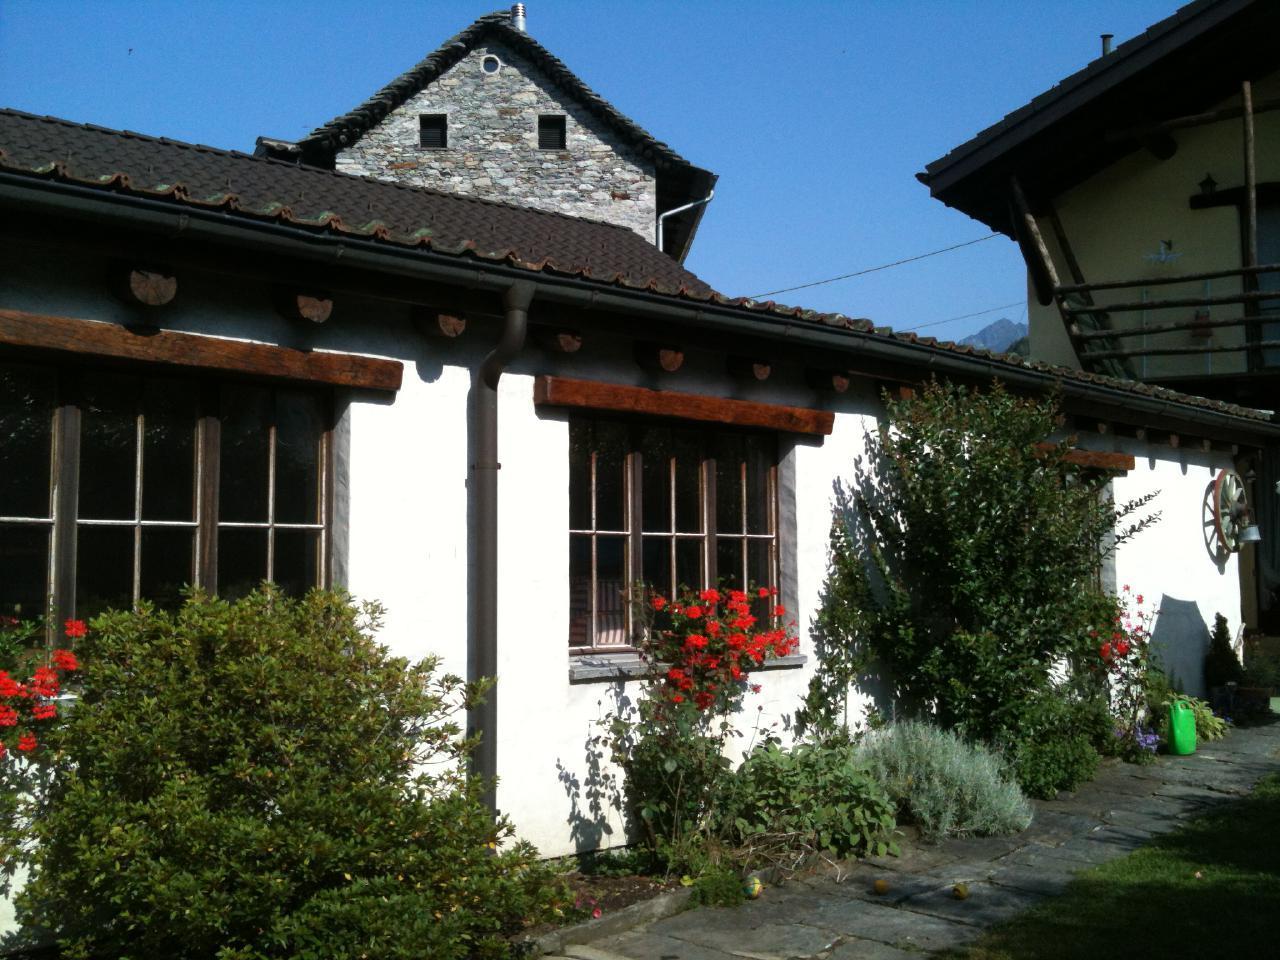 Casa San Cristoforo - "Studio" Ferienhaus in der Schweiz